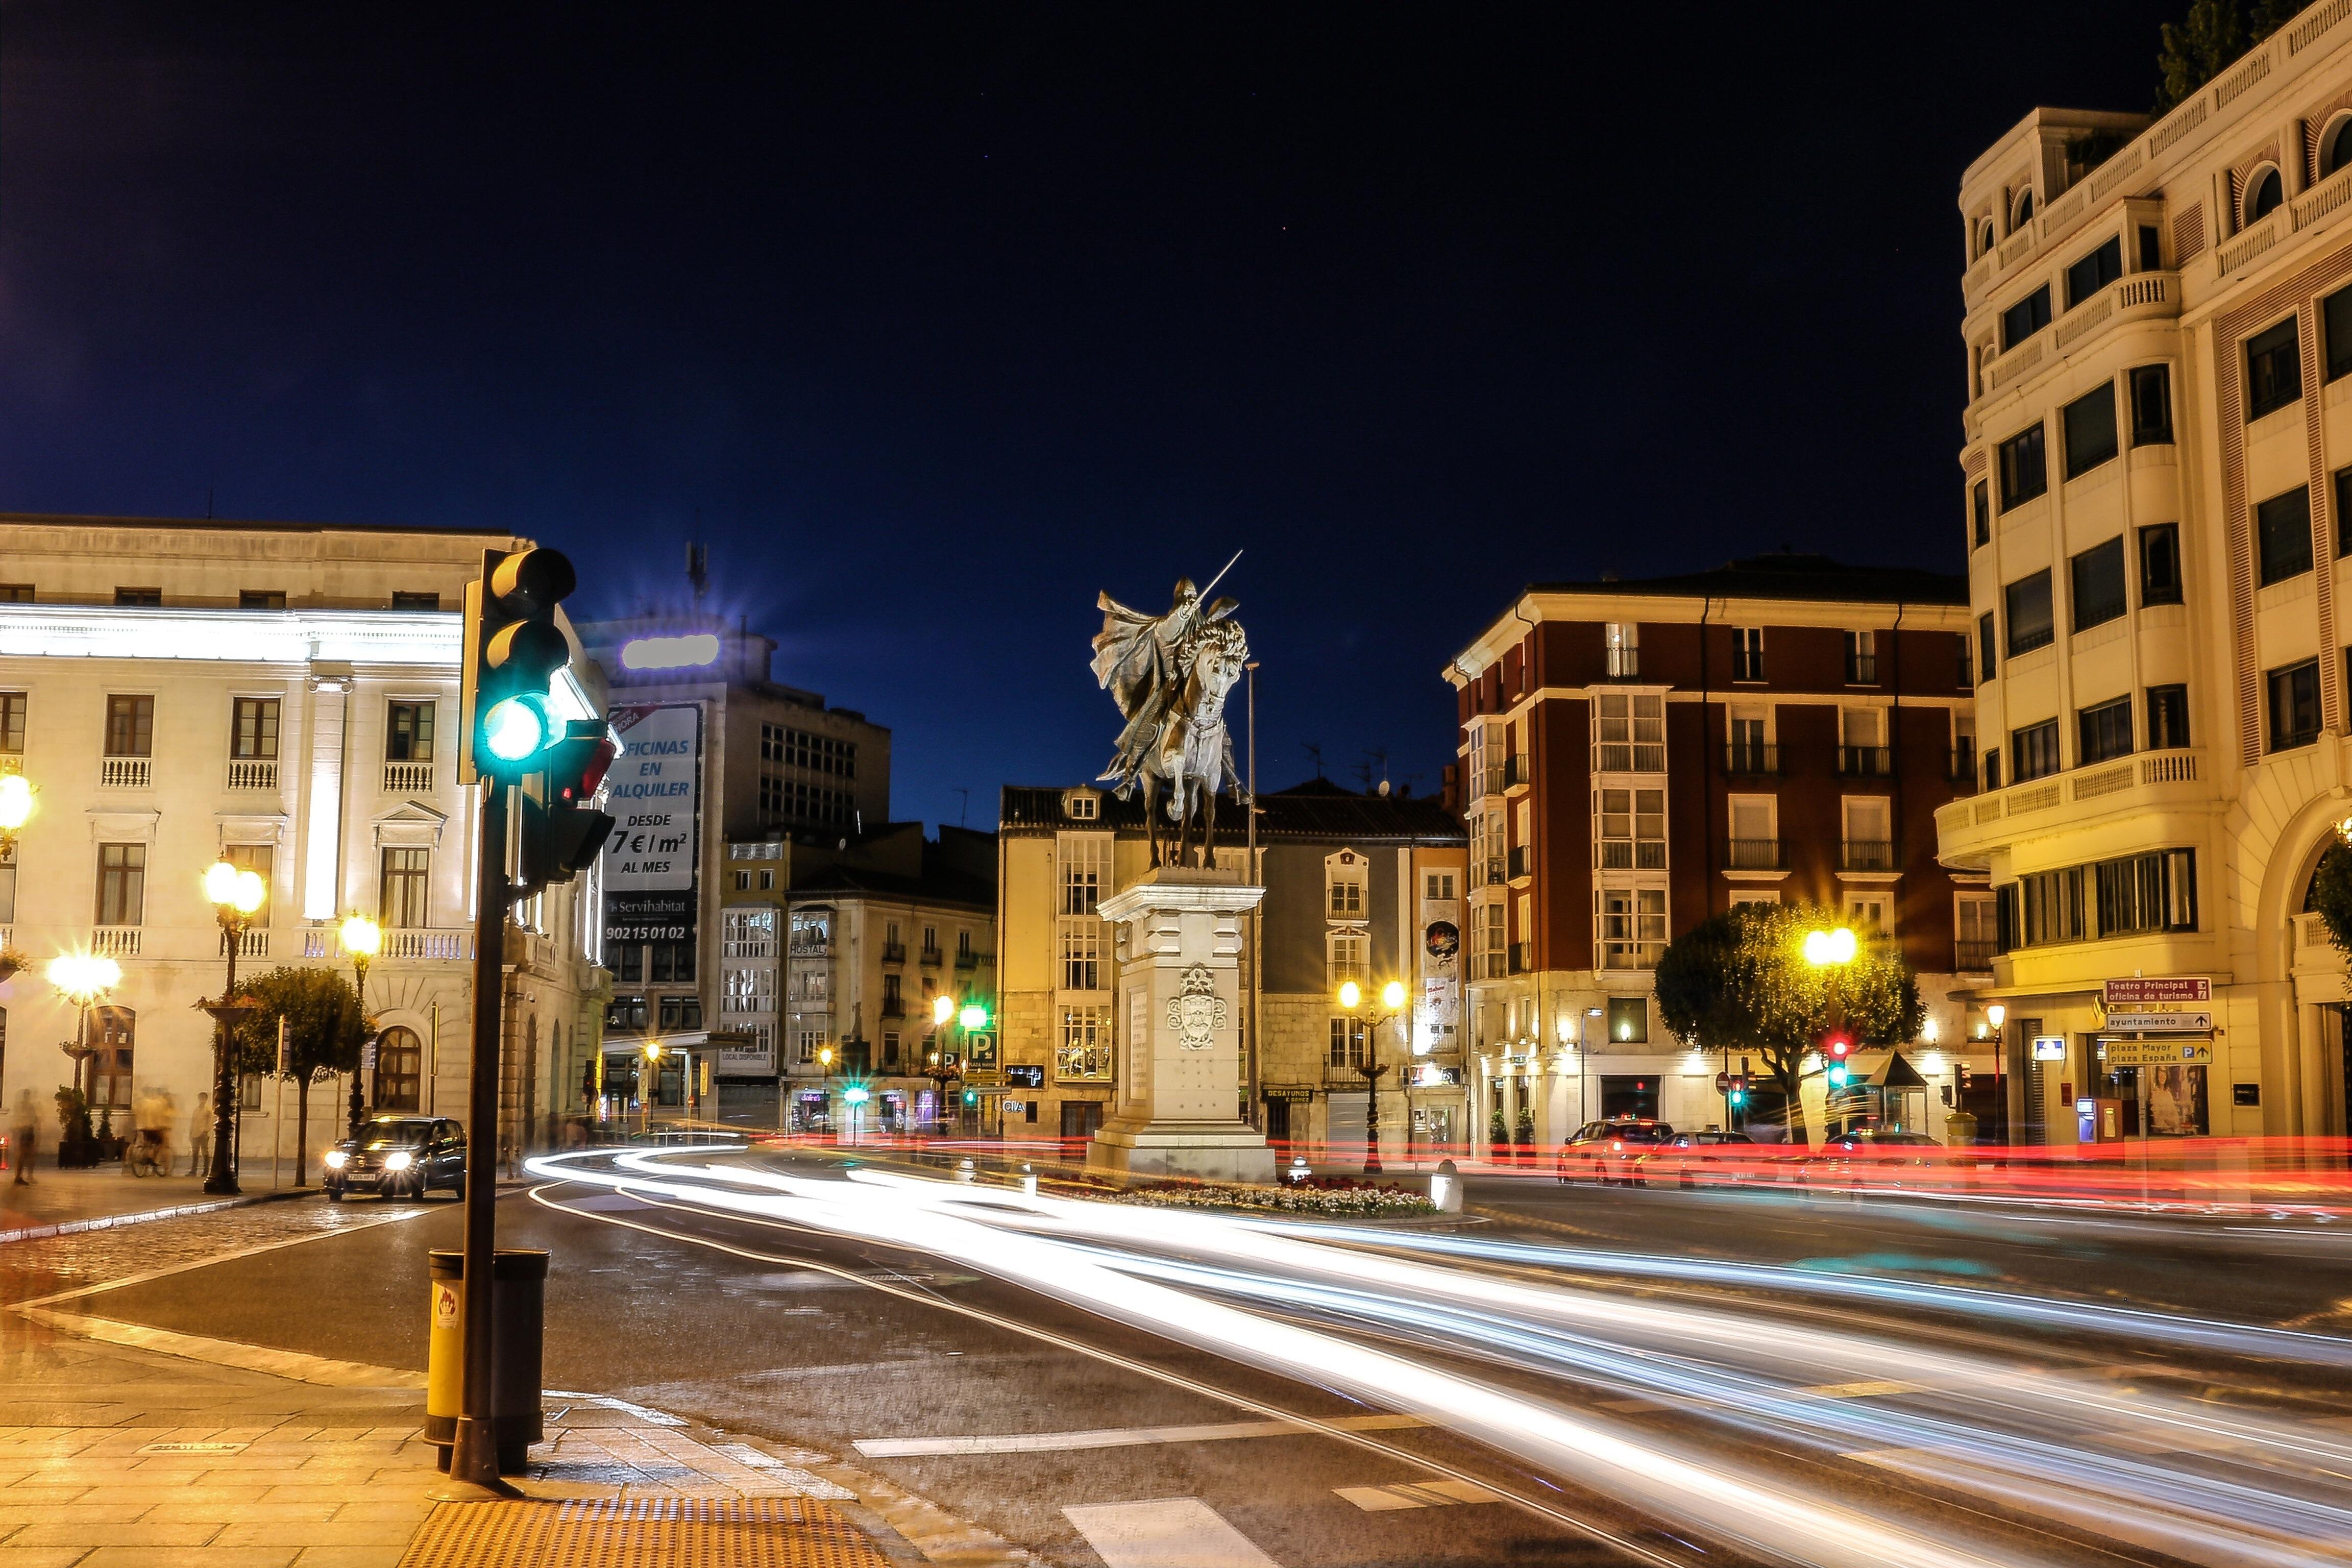 Fascinar Mayordomo Gobernador Plaza de El Cid en Burgos: 5 opiniones y 5 fotos